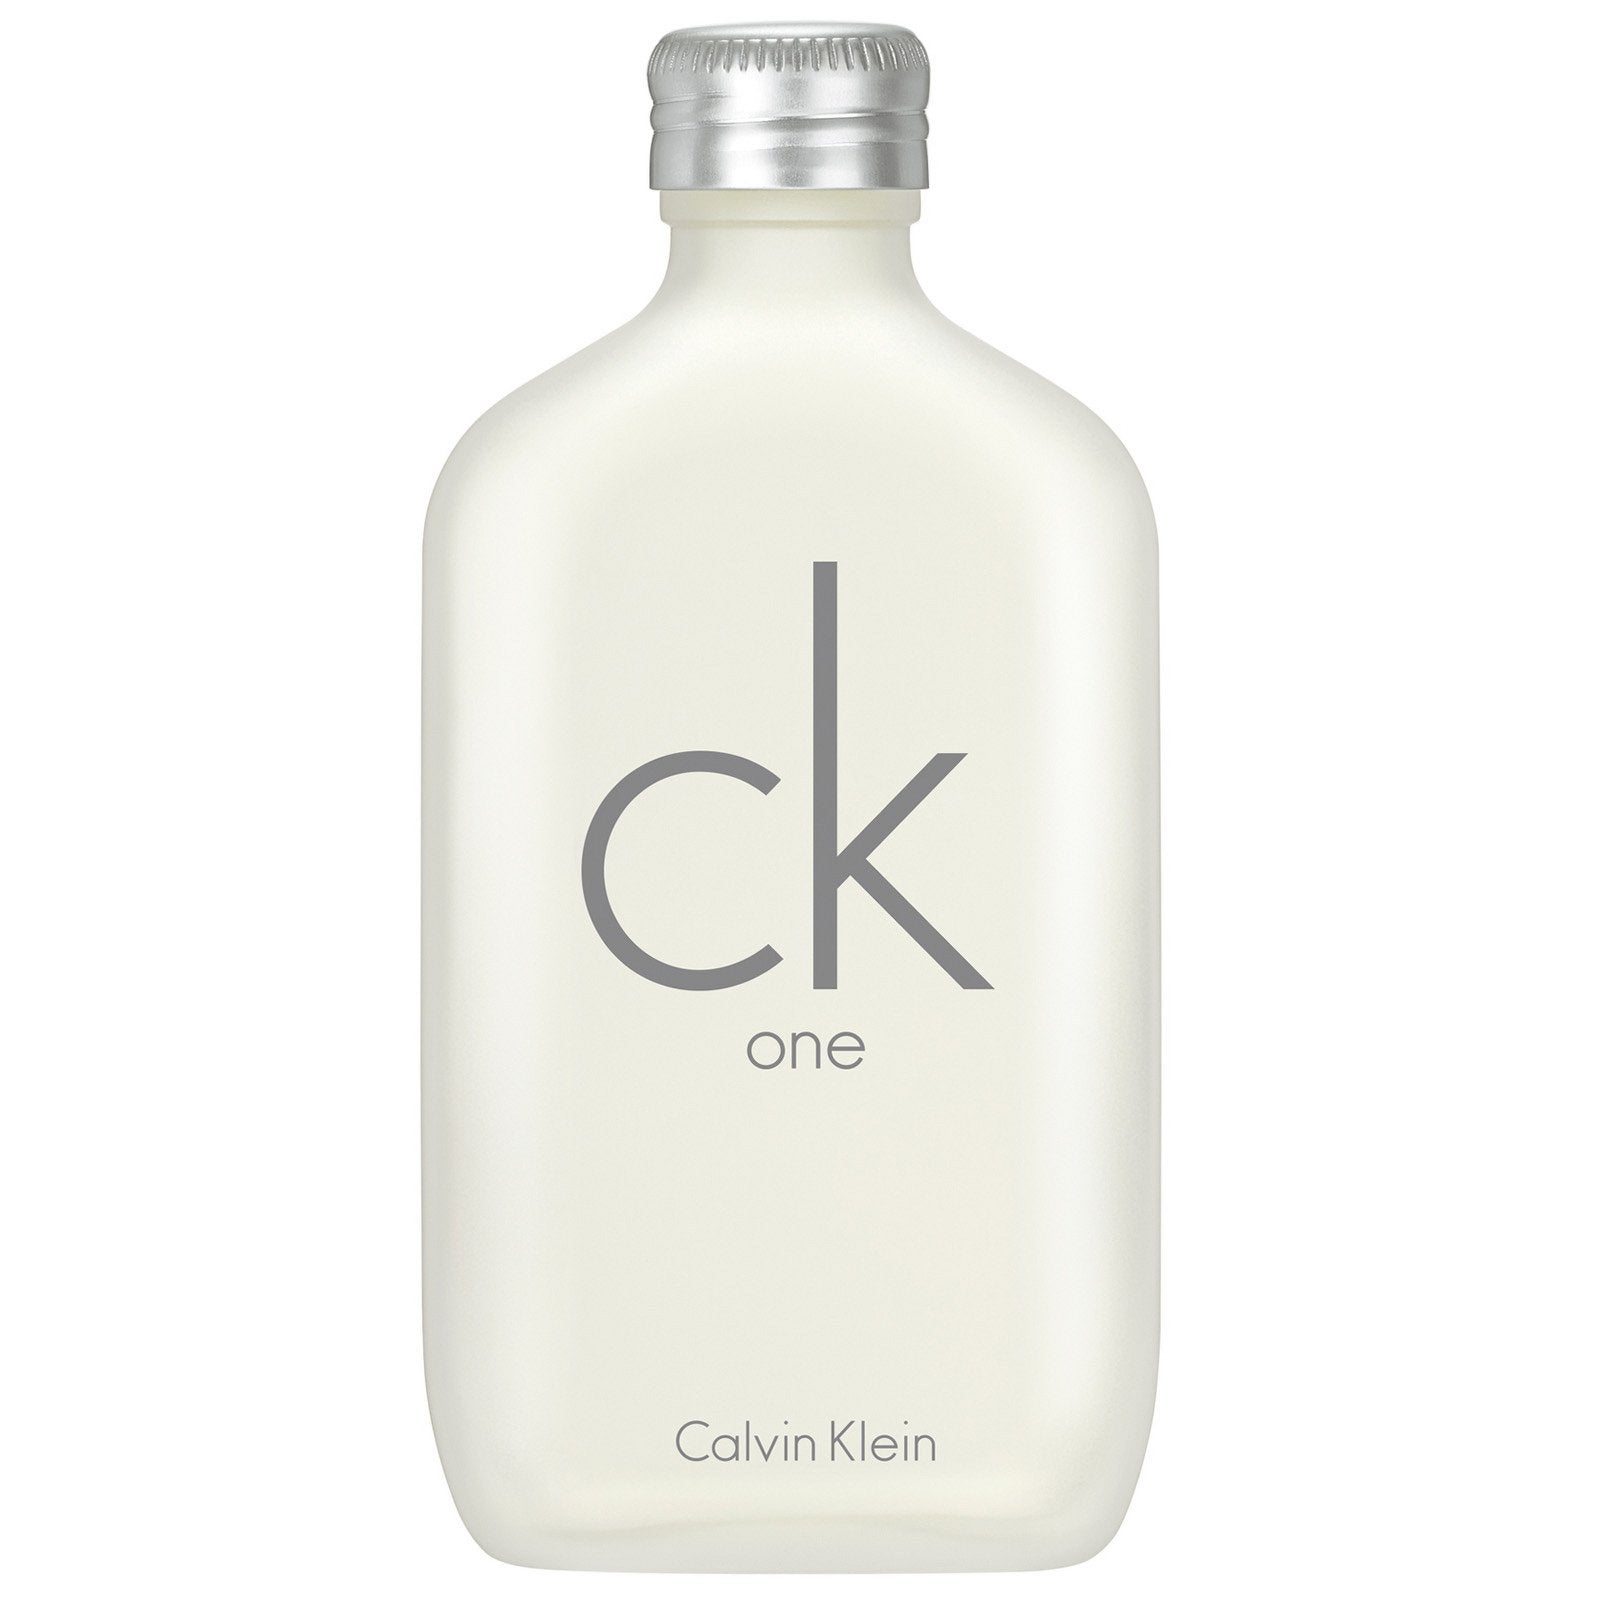 Calvin Klein CK One EDT